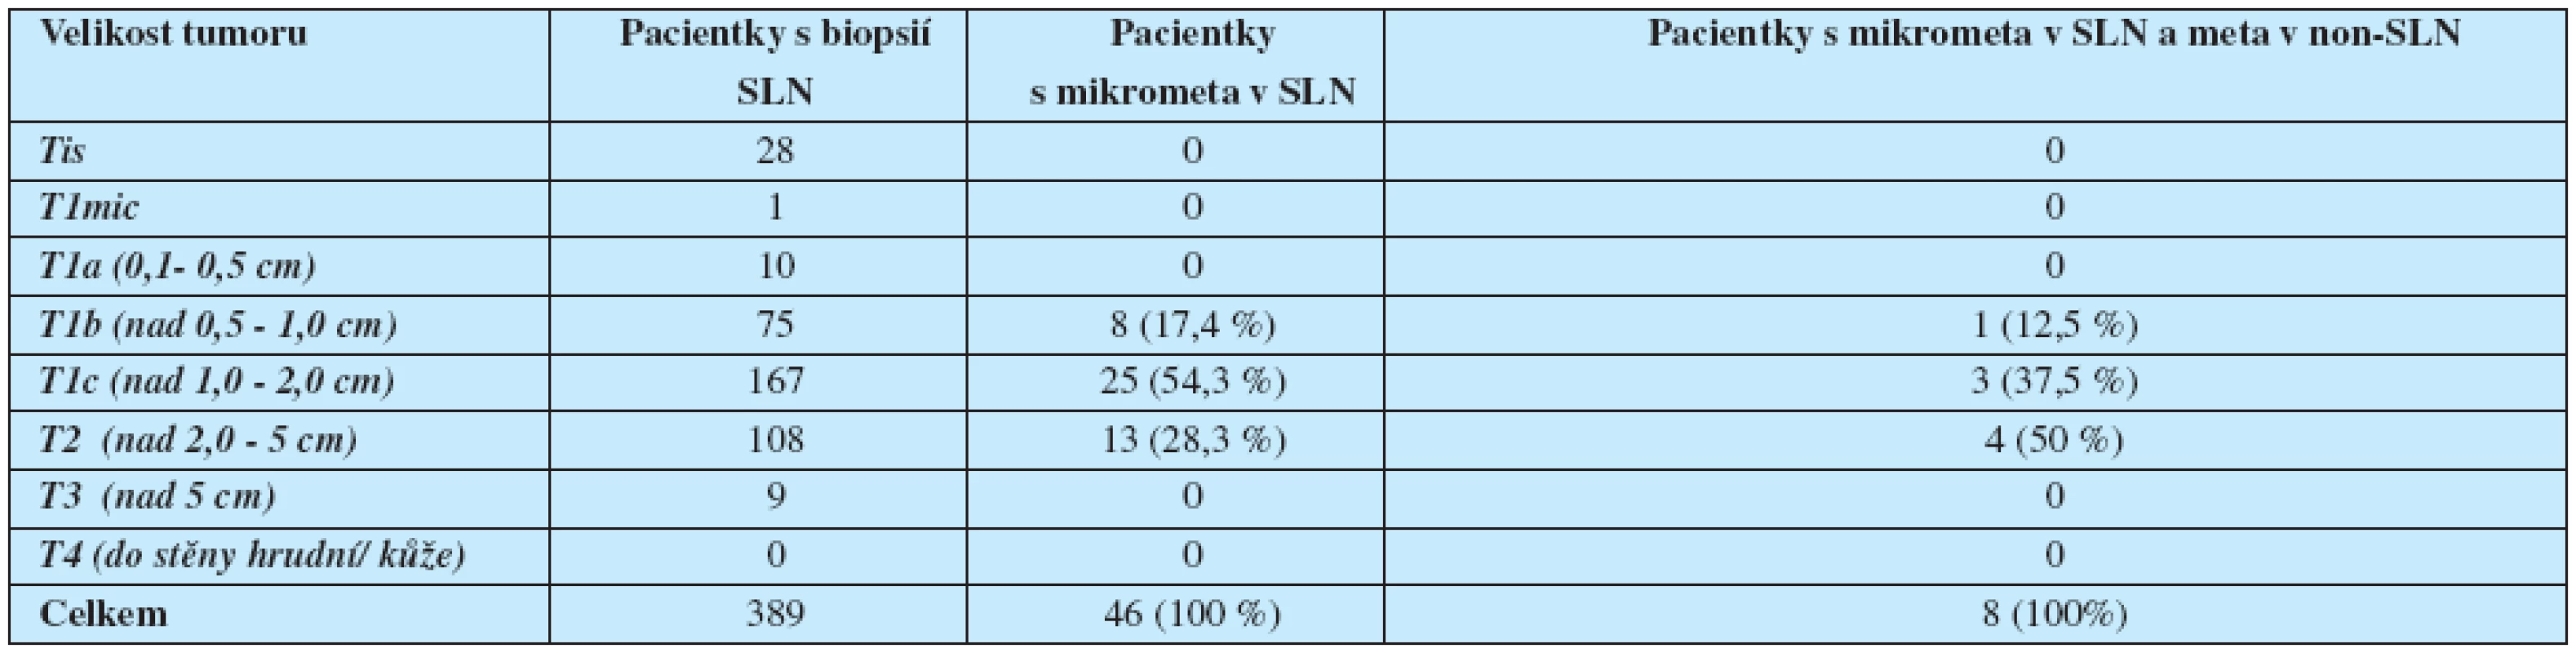 Pacientky s biopsií SLN rok 2004-2008